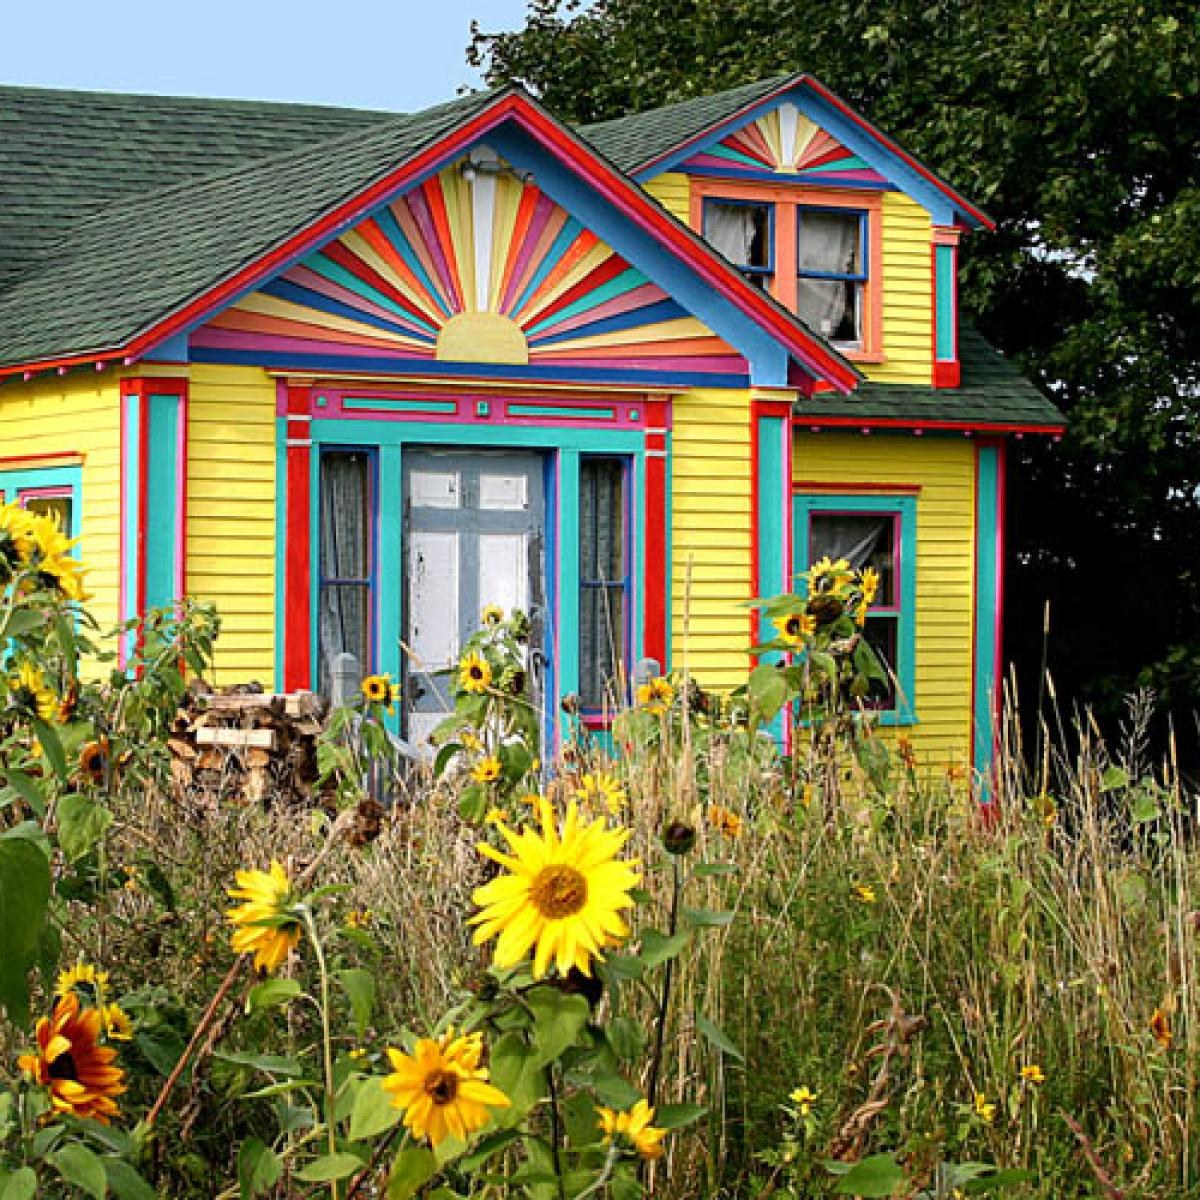 Colorful houses. Разноцветный дом. Желтый дачный домик. Разноцветный дачный домик. Деревенский дом желтого цвета.